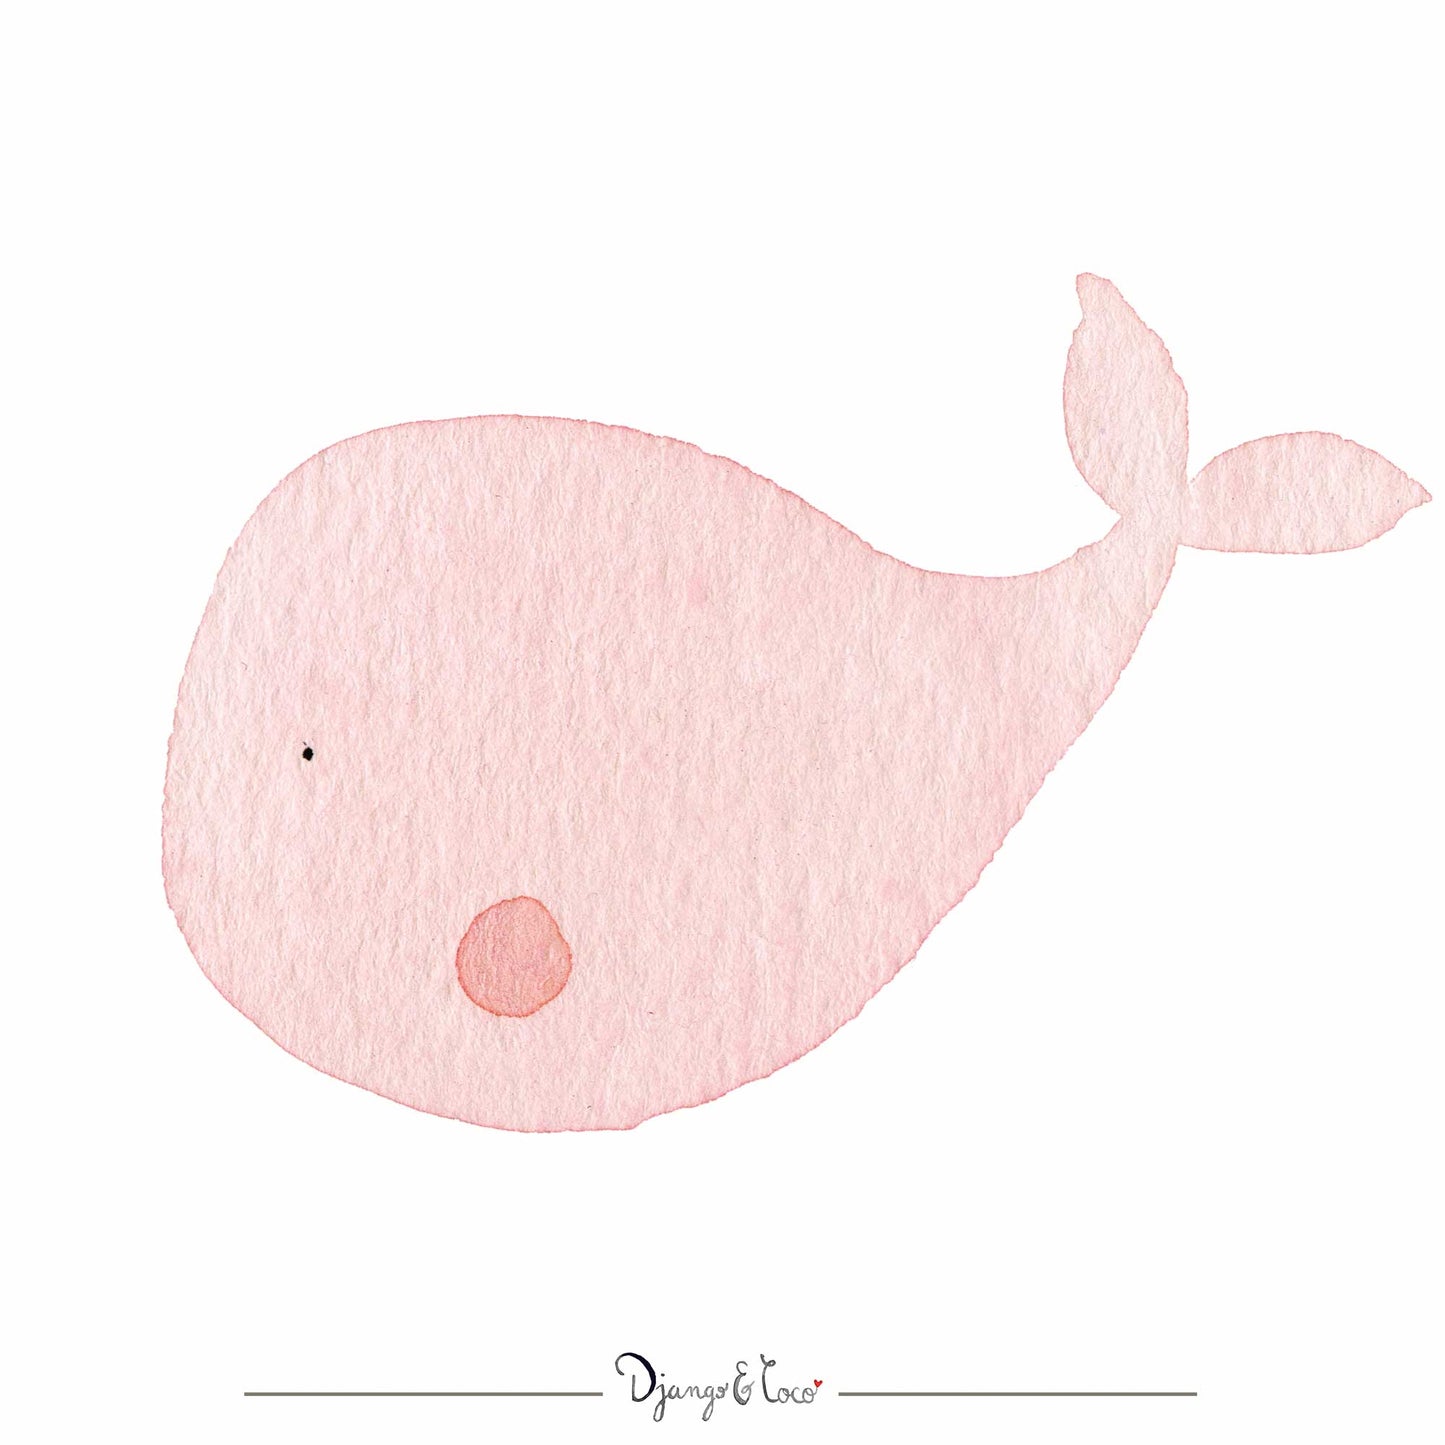 Affiche enfant - "Rose, la douce baleine : Un souffle de tendresse"